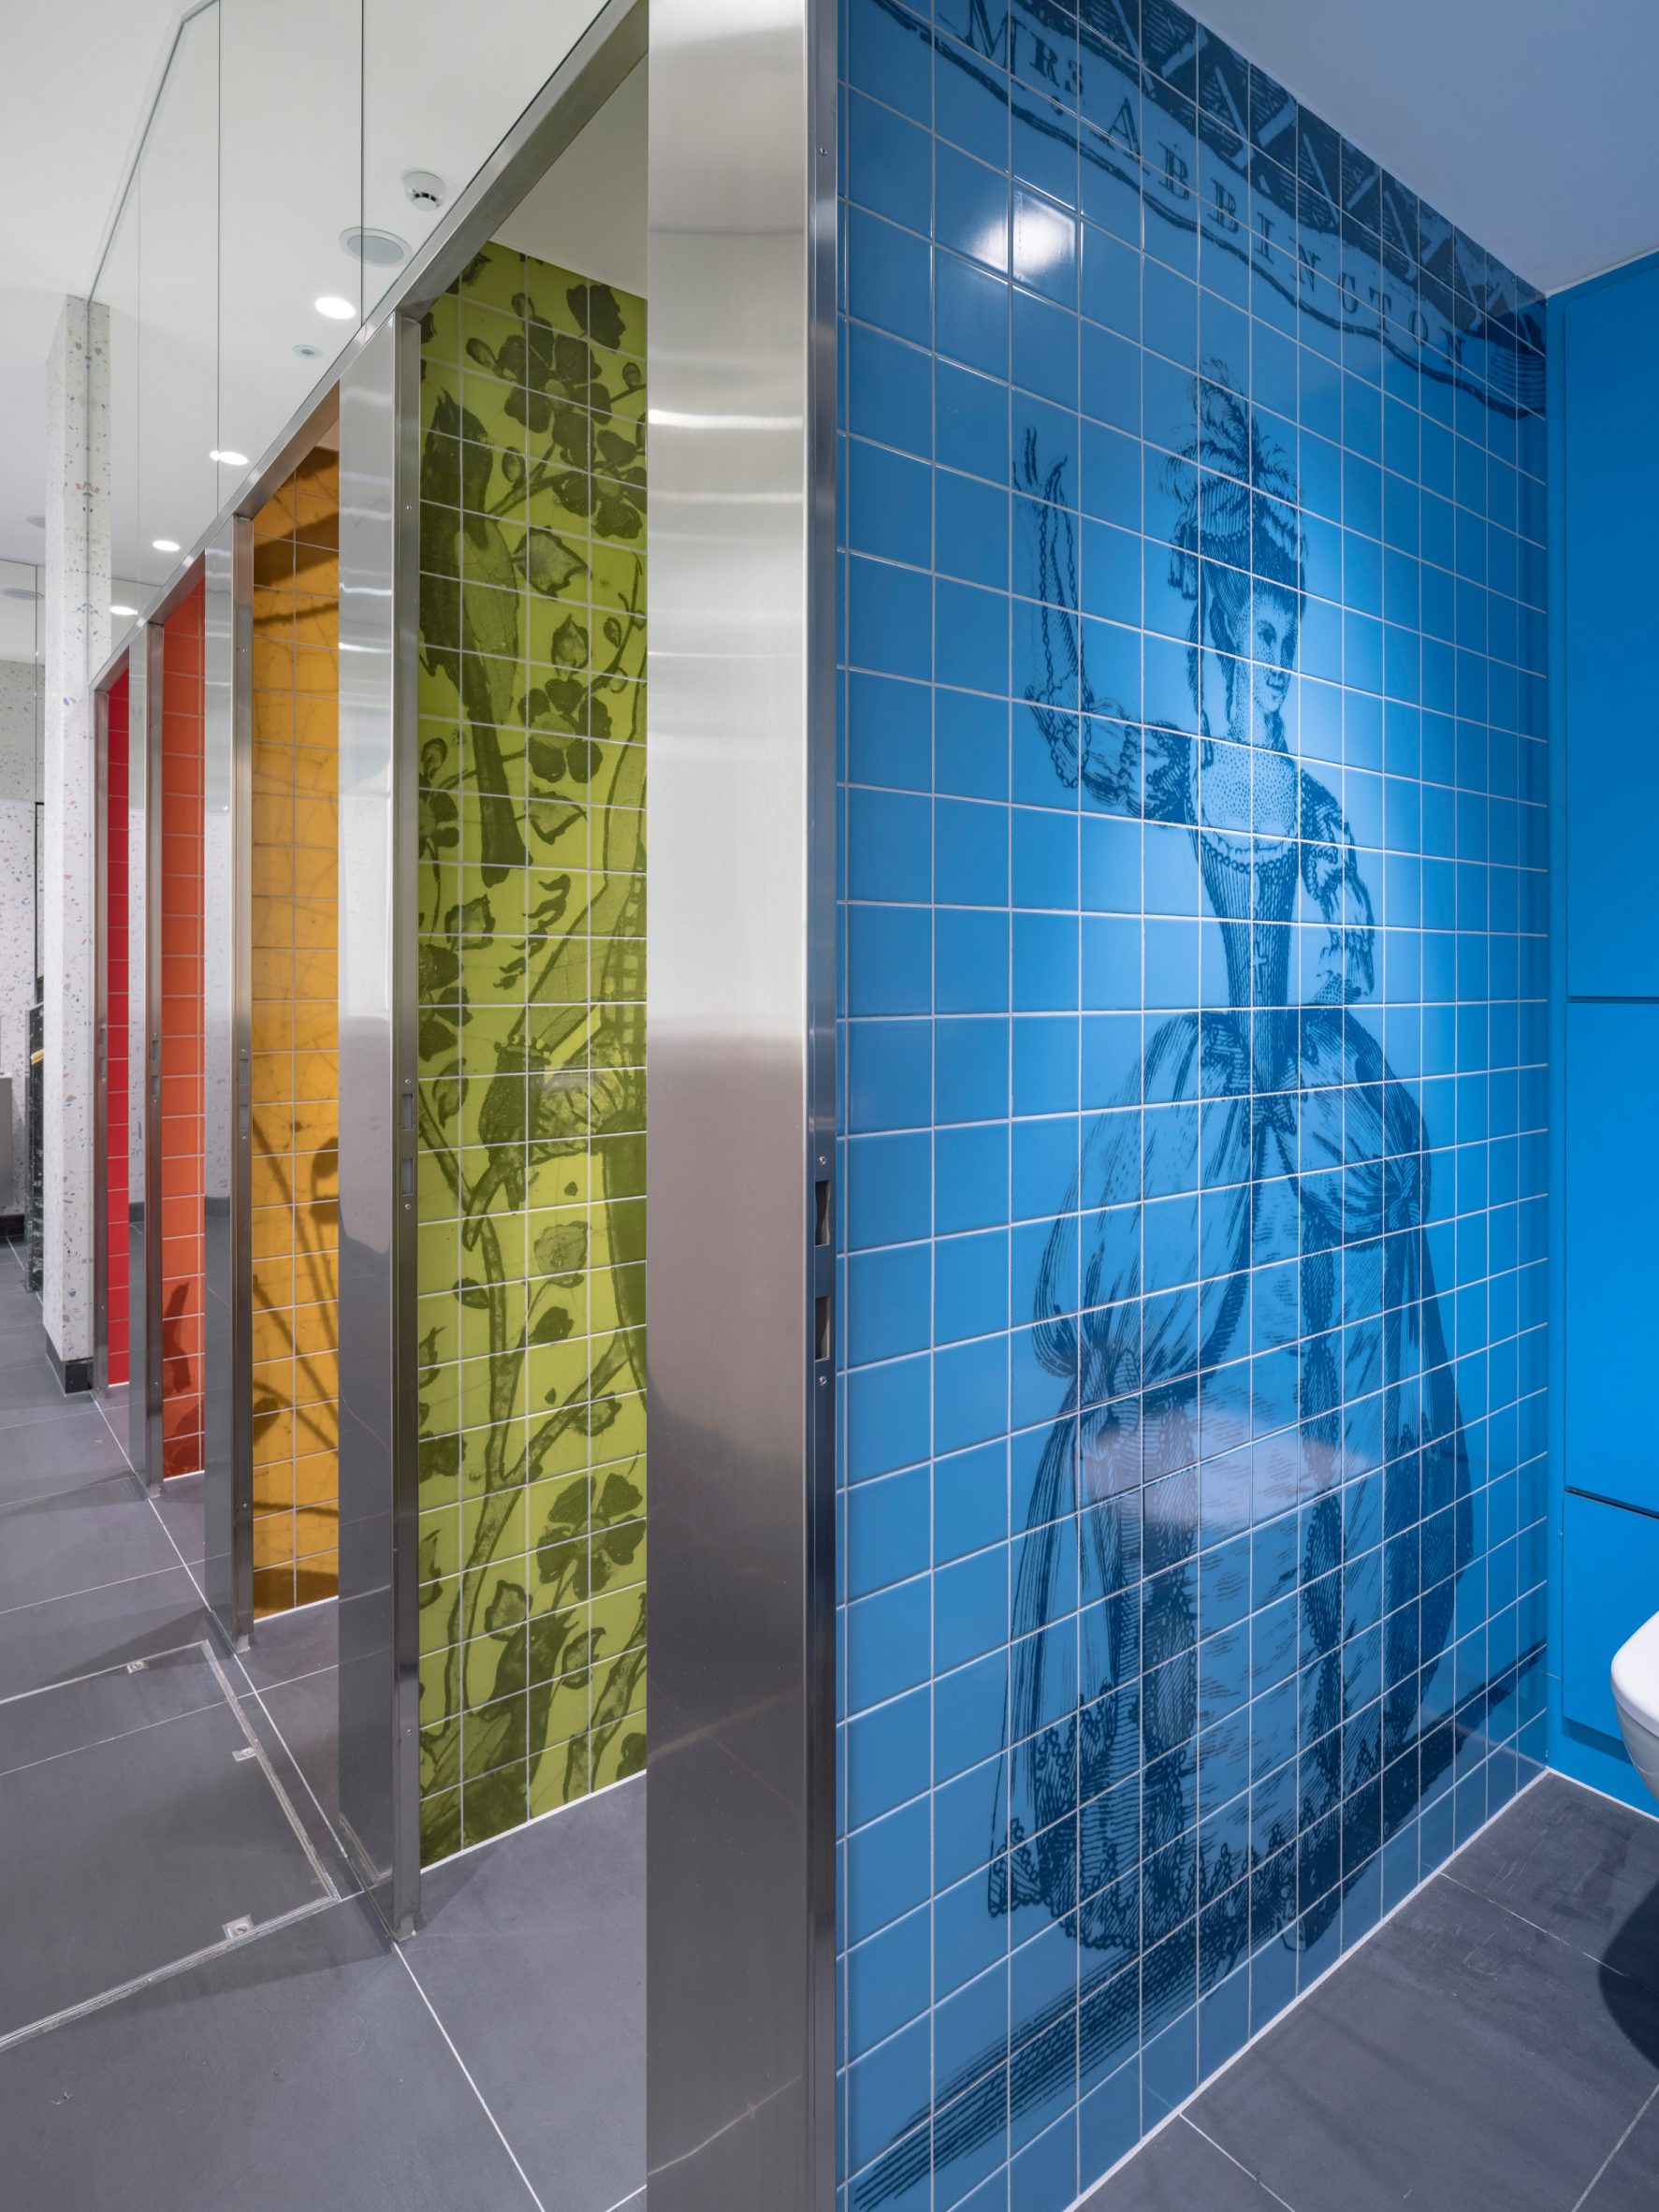 Digitally-printed colourful bathroom walls